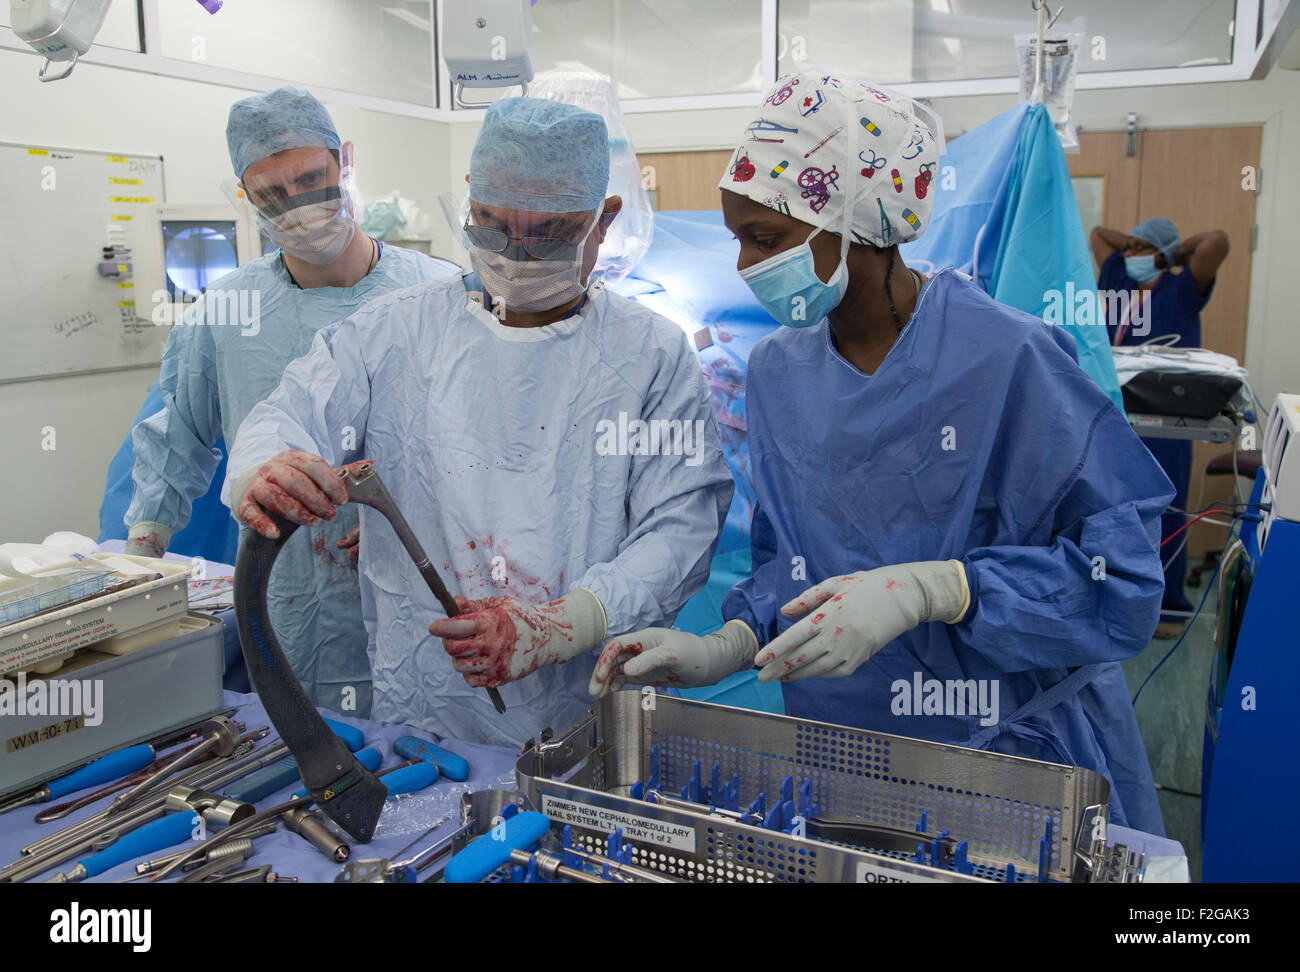 Le chirurgien et le personnel médical travaillant dans un bloc opératoire dans un hôpital du NHS Banque D'Images